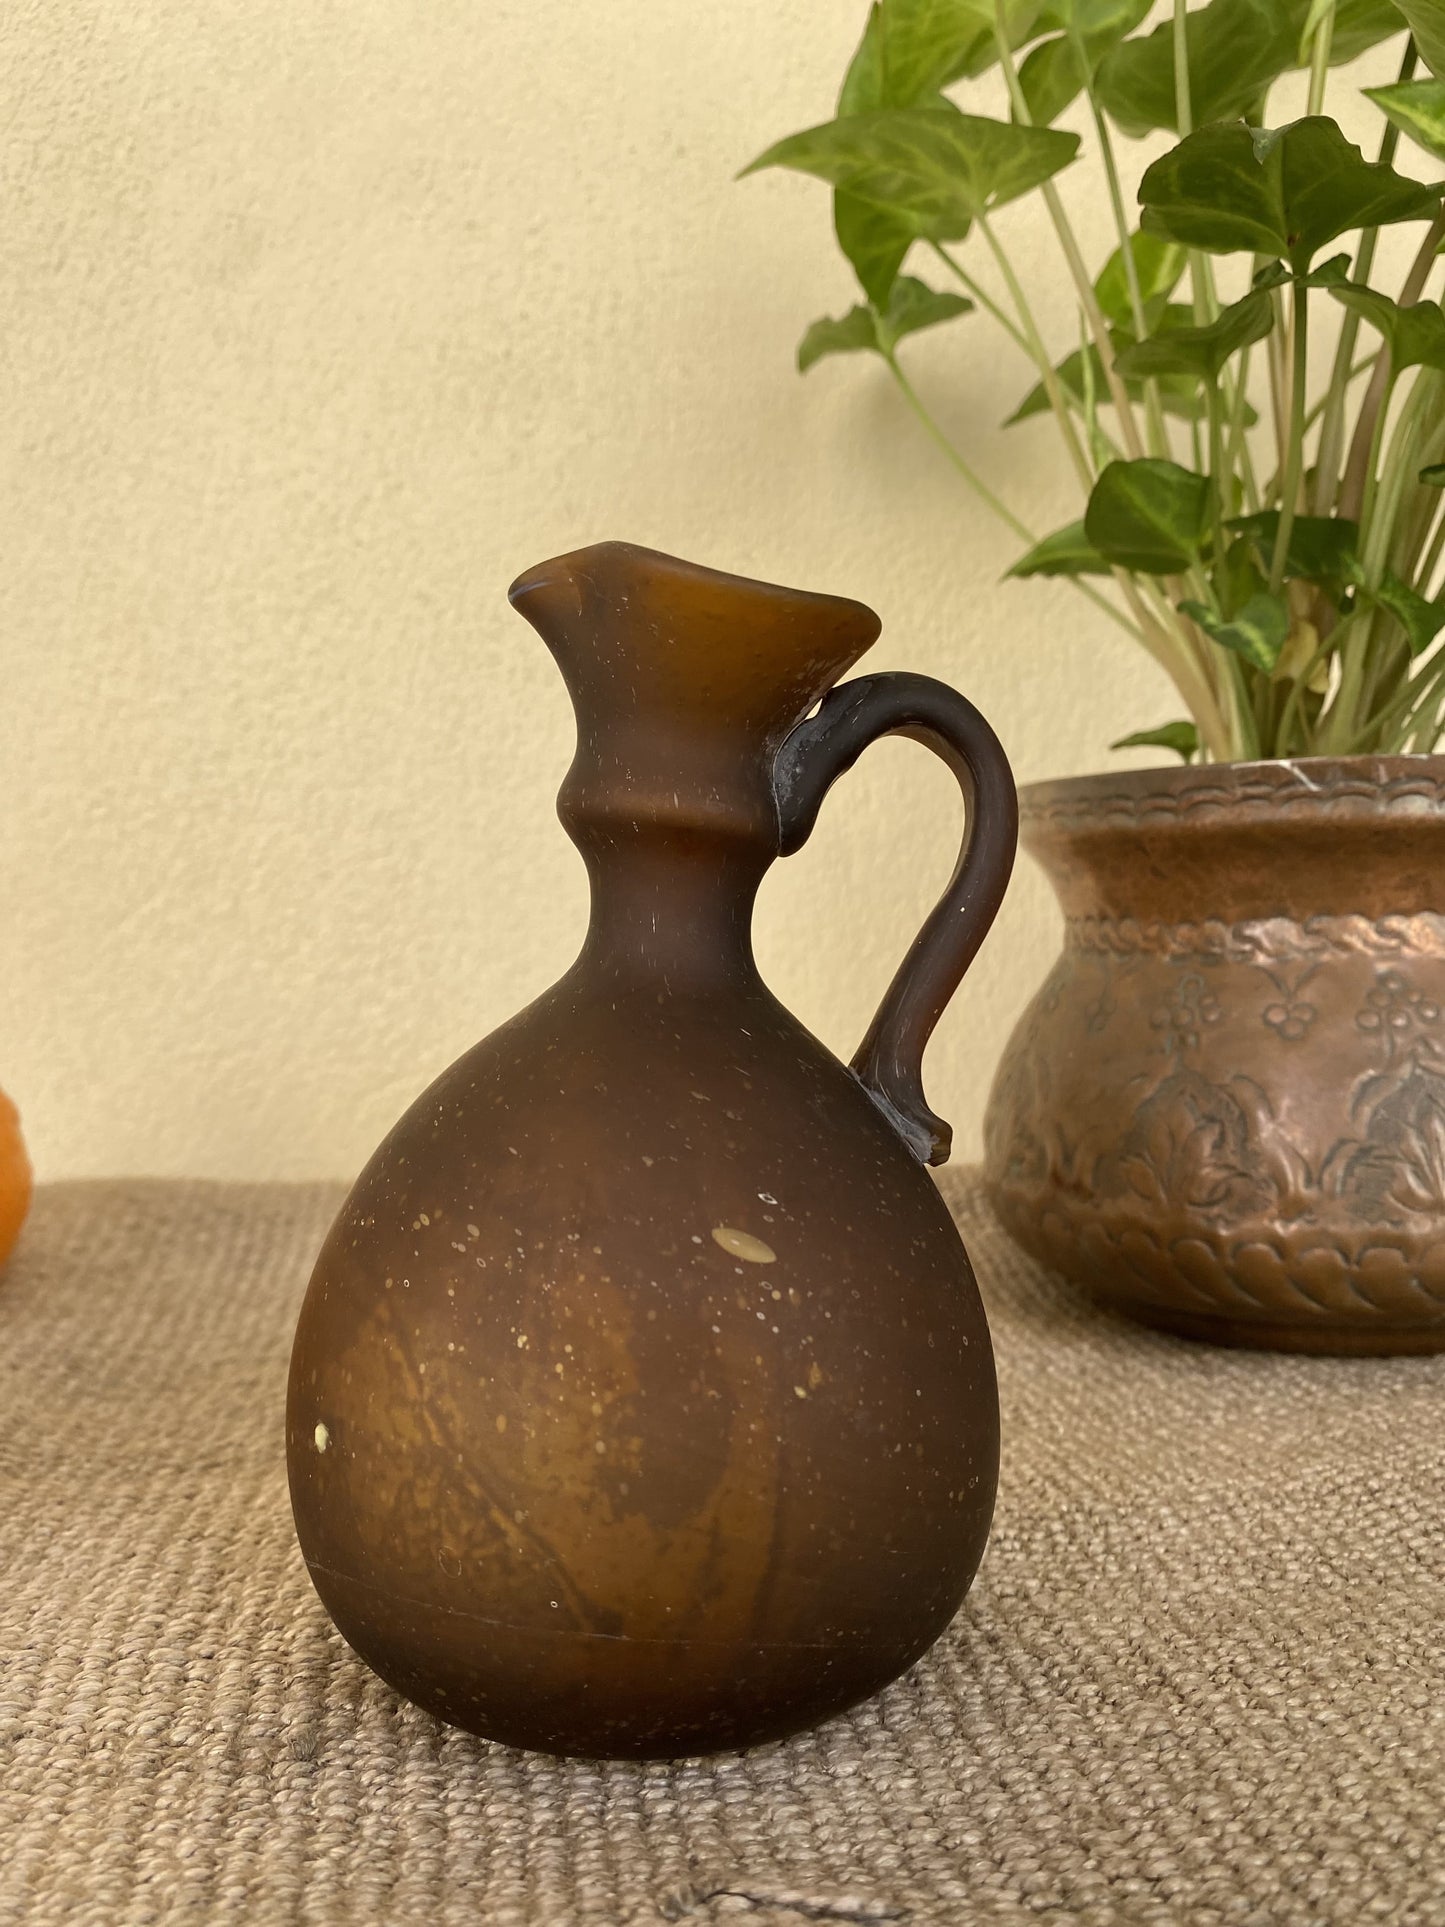 phoenician-glass-vase-brown-handle-hebron